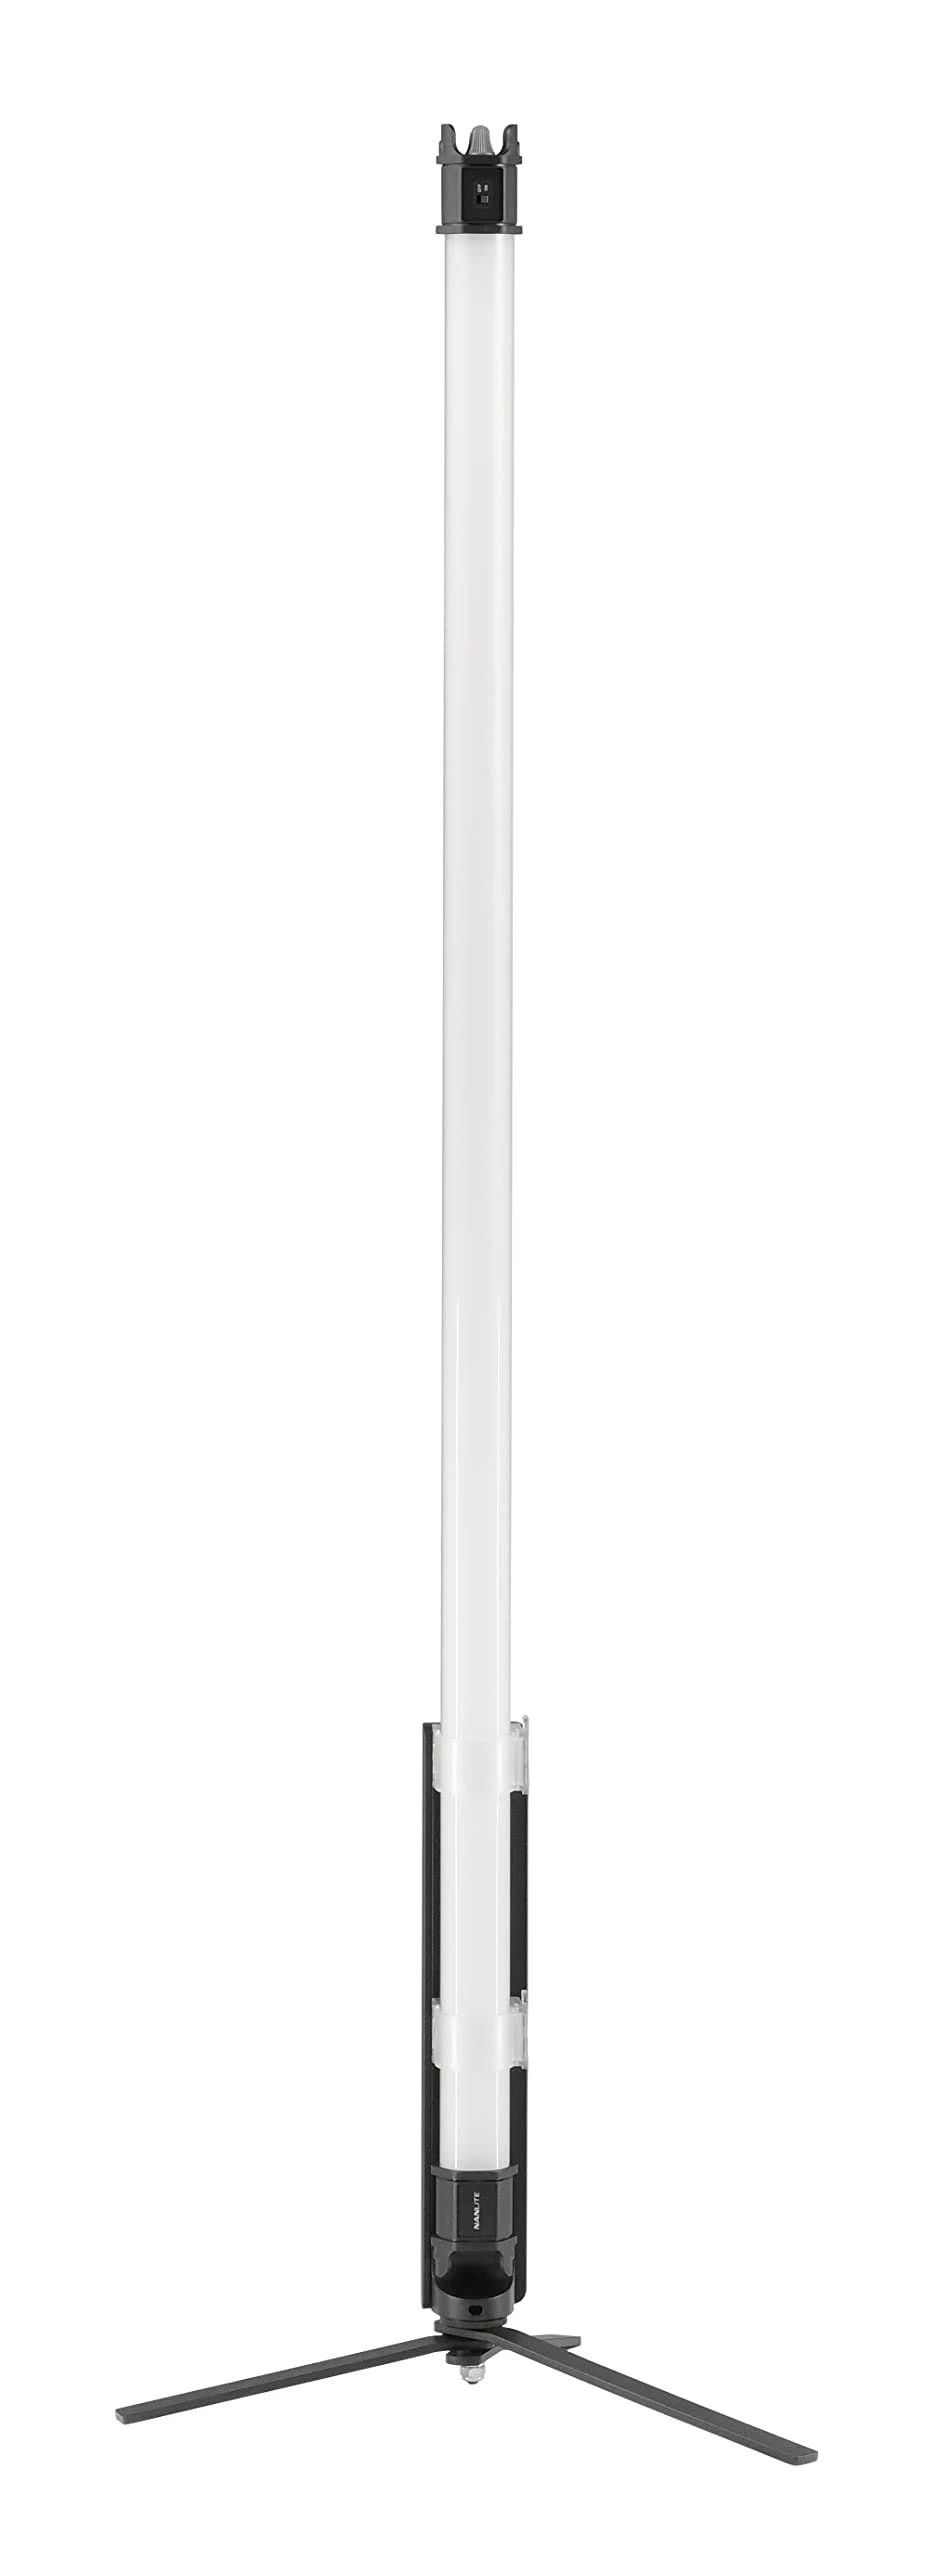 NANLITE PAVOTUBE II 30C 4KIT - Studiolampe (Weiss)